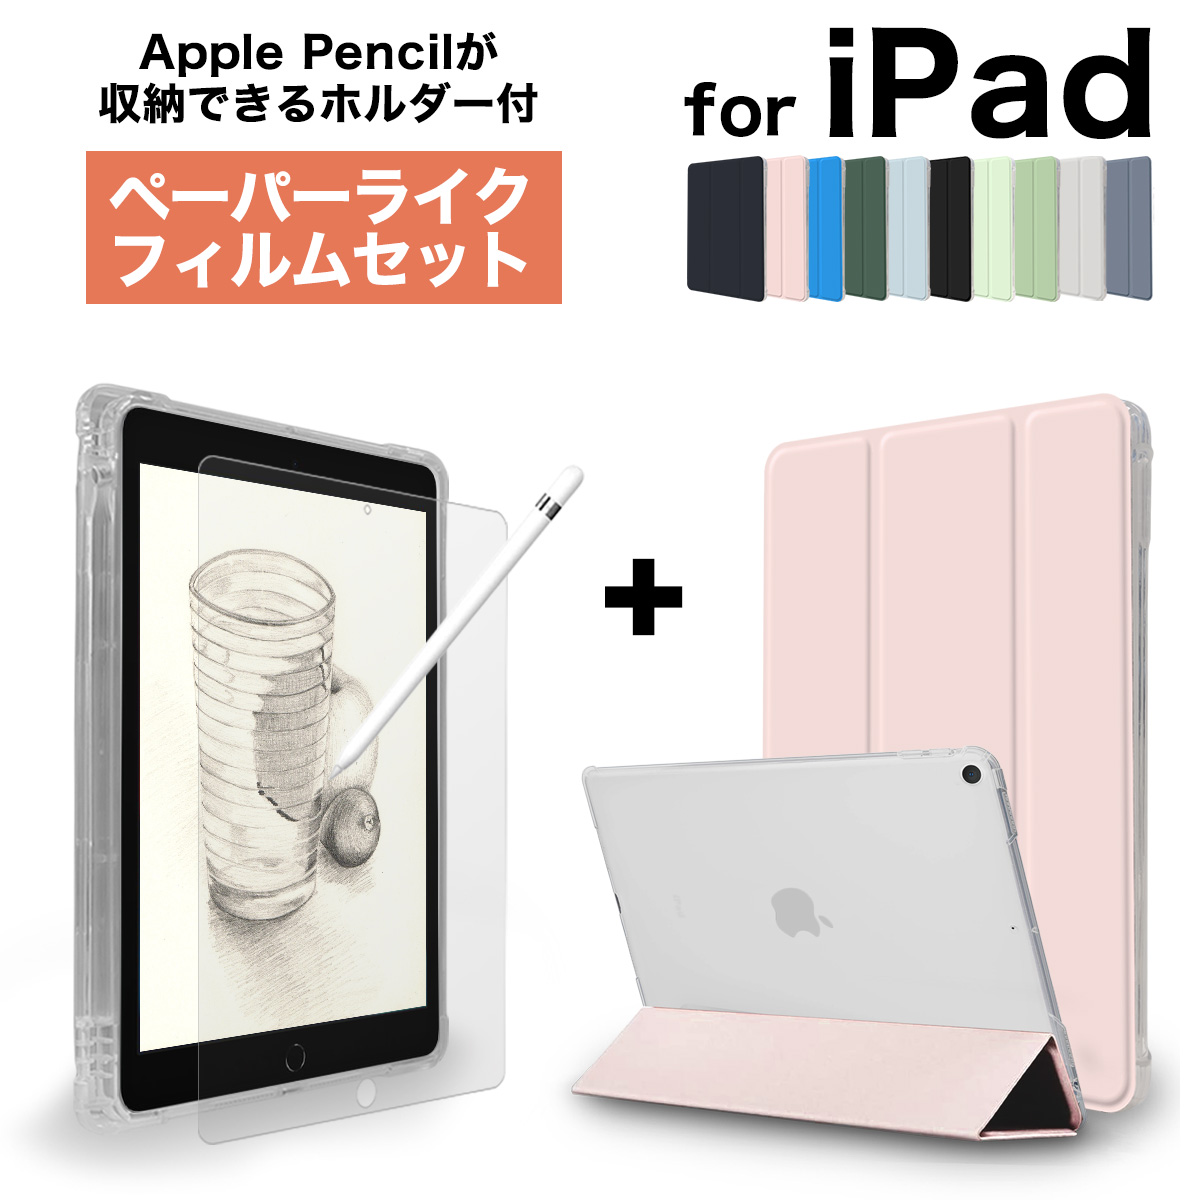 新到着 iPad Pro ペーパーライク付 ApplePencil付 第1世代 12.9 - タブレット